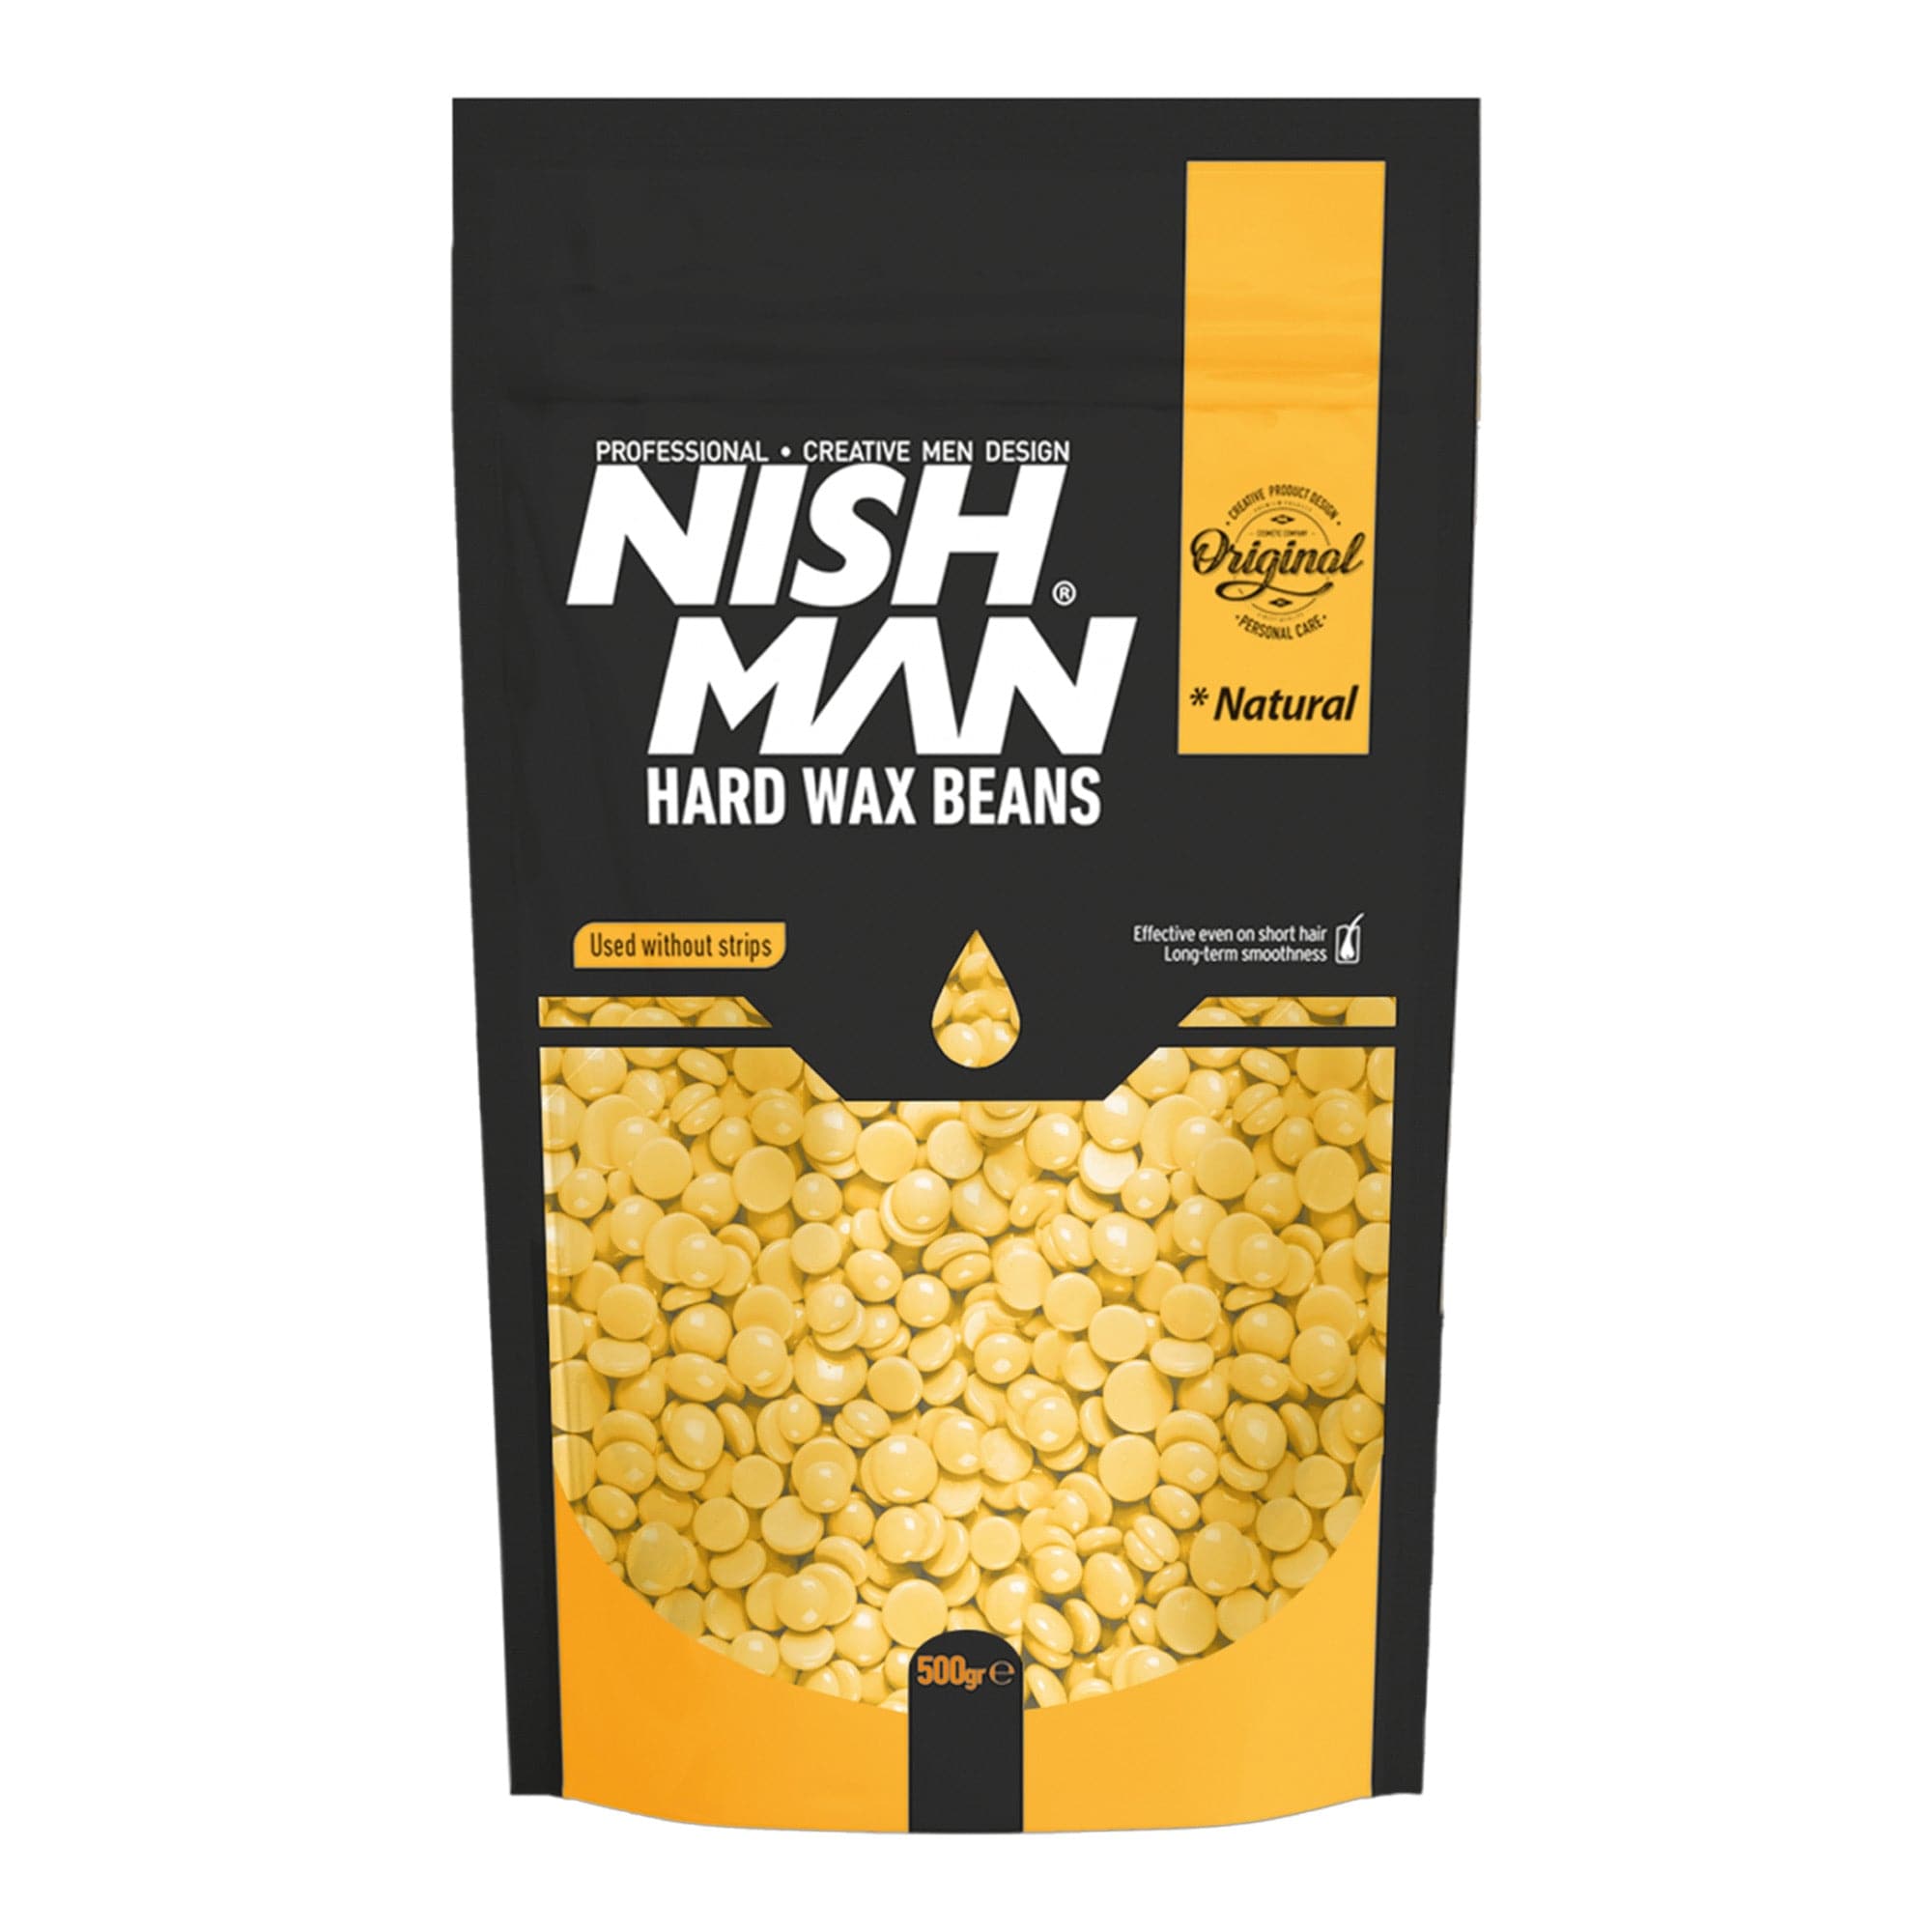 Nishman - Hard Wax Beans Natural 500g